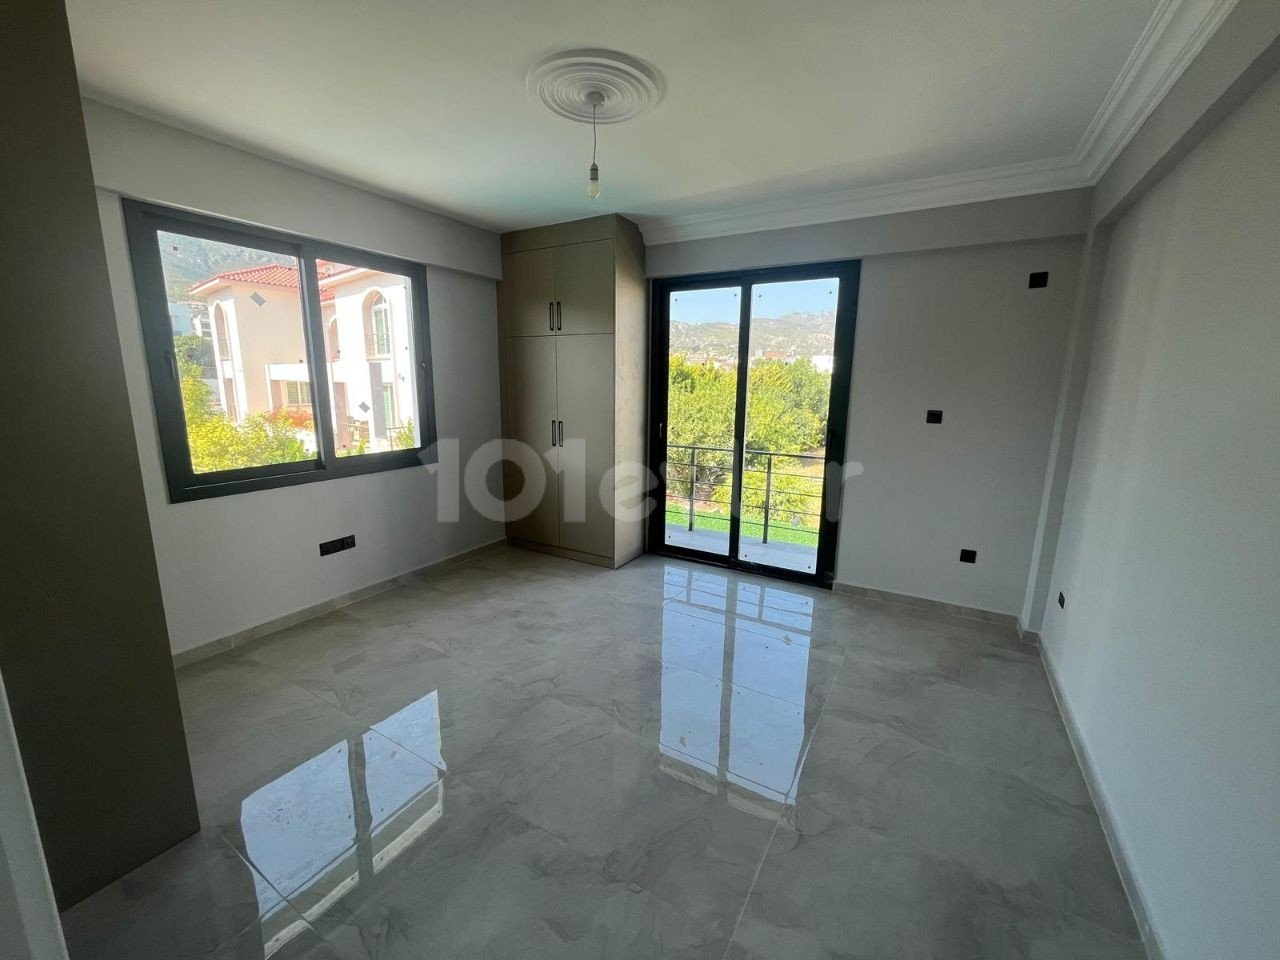 Satılık Villa - Bellapais, Girne, Kuzey Kıbrıs-a480700c-ff10-4b2f-b446-8a6f18a1ccf1